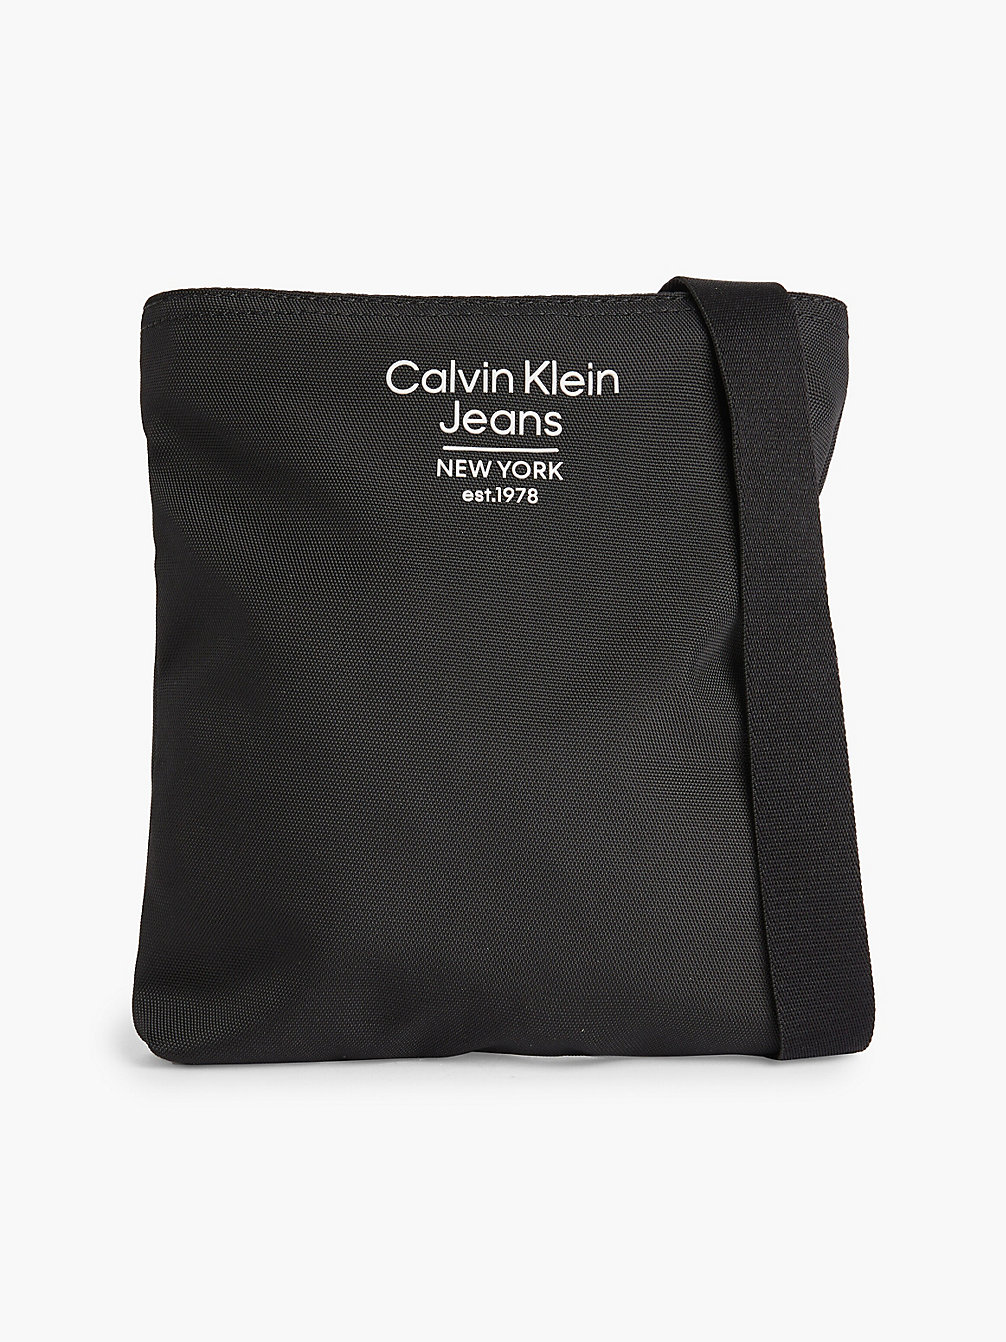 BLACK Sac En Bandoulière Plat Recyclé undefined hommes Calvin Klein